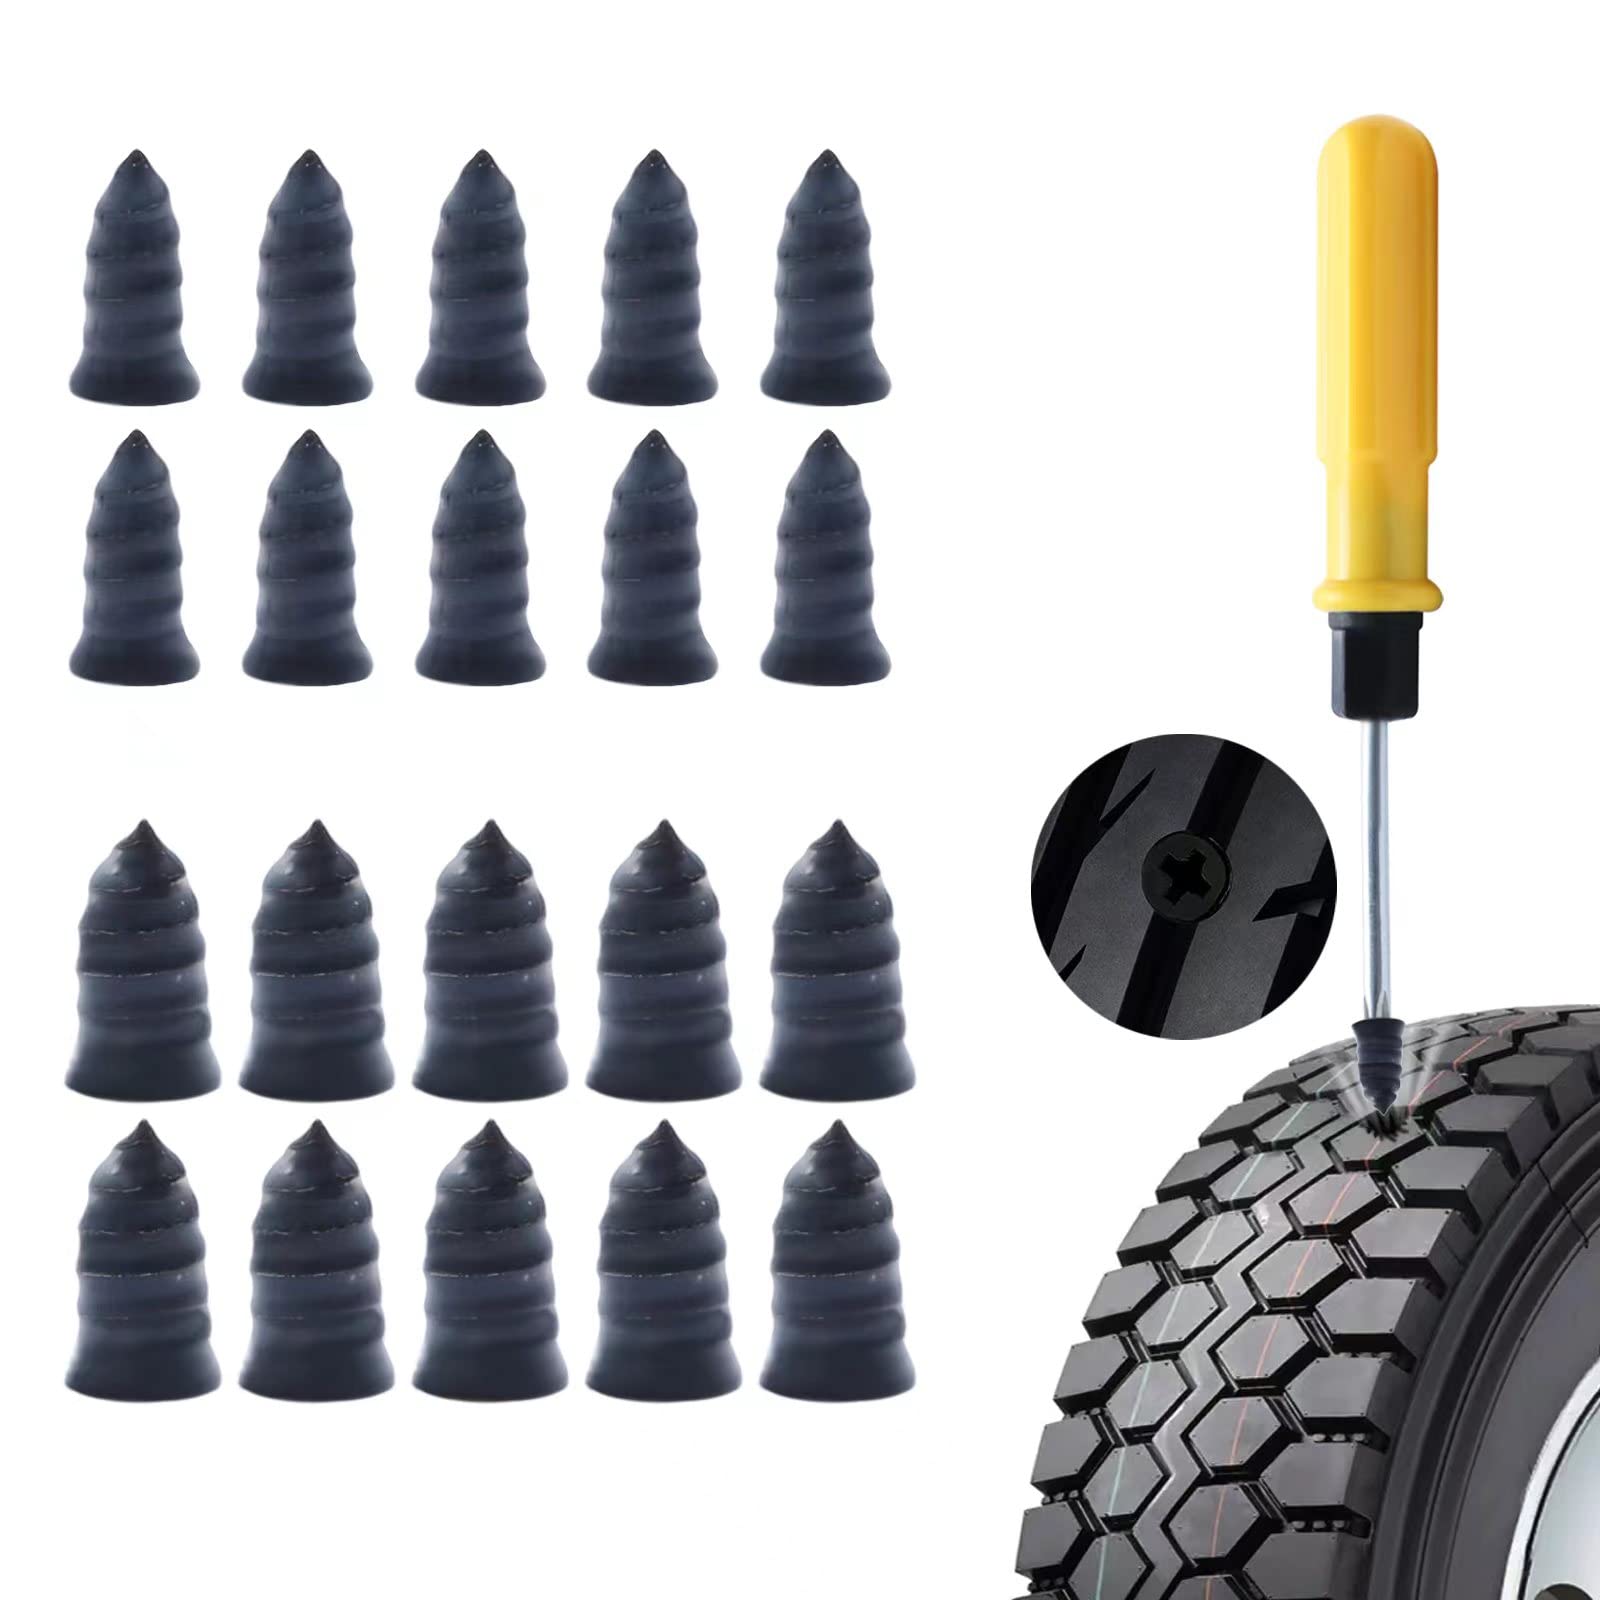 MAIXINNEW 20 Stück Vakuum Reifen Reparatur Nagel, Reifenreparatur Gumminagel mit Schraubendreher für Auto, Motorrad, Fahrrad, Geländewagen von MAIXINNEW